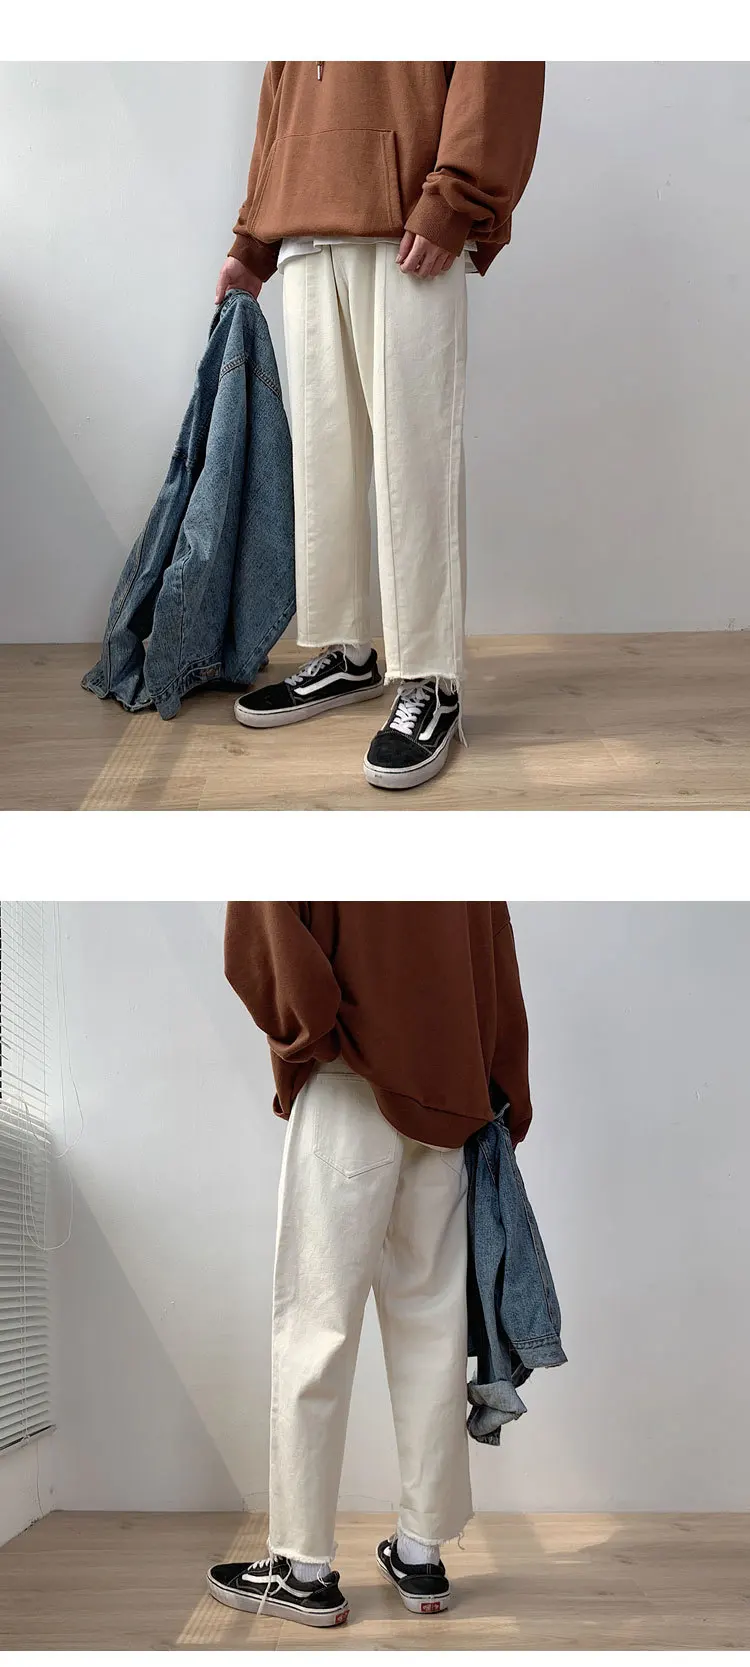 2019 осенние мужские повседневные брюки Модные трендовые мешковатые мужские классические джинсы с накладной карман байкерские джинсовые